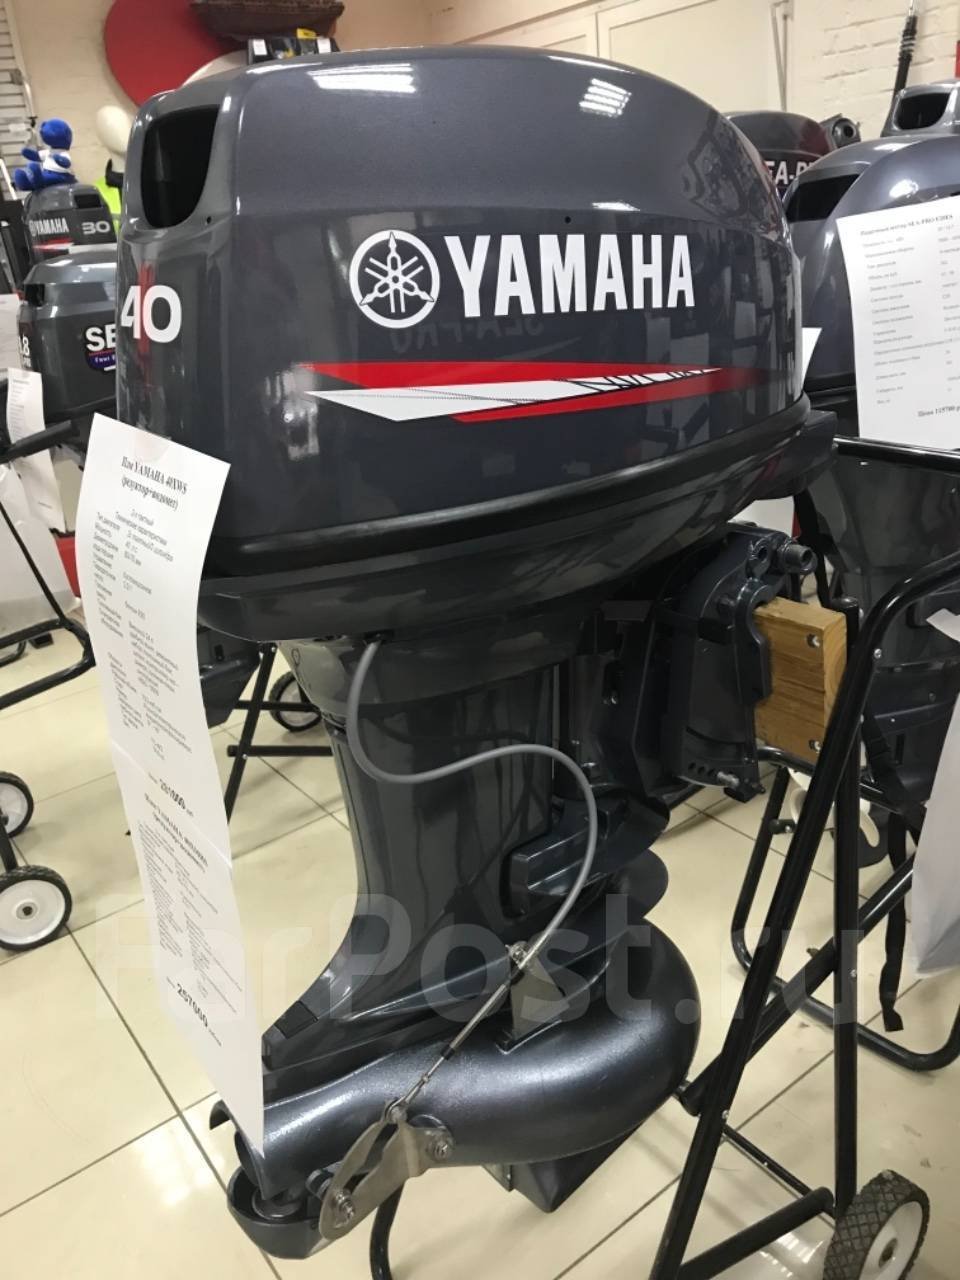 Купить мотор ямаха красноярске. Мотор Yamaha 40. Мотор Ямаха 40 двухтактный. Мотор Ямаха 40 водомет. Лодочный мотор Ямаха 40 водомет.